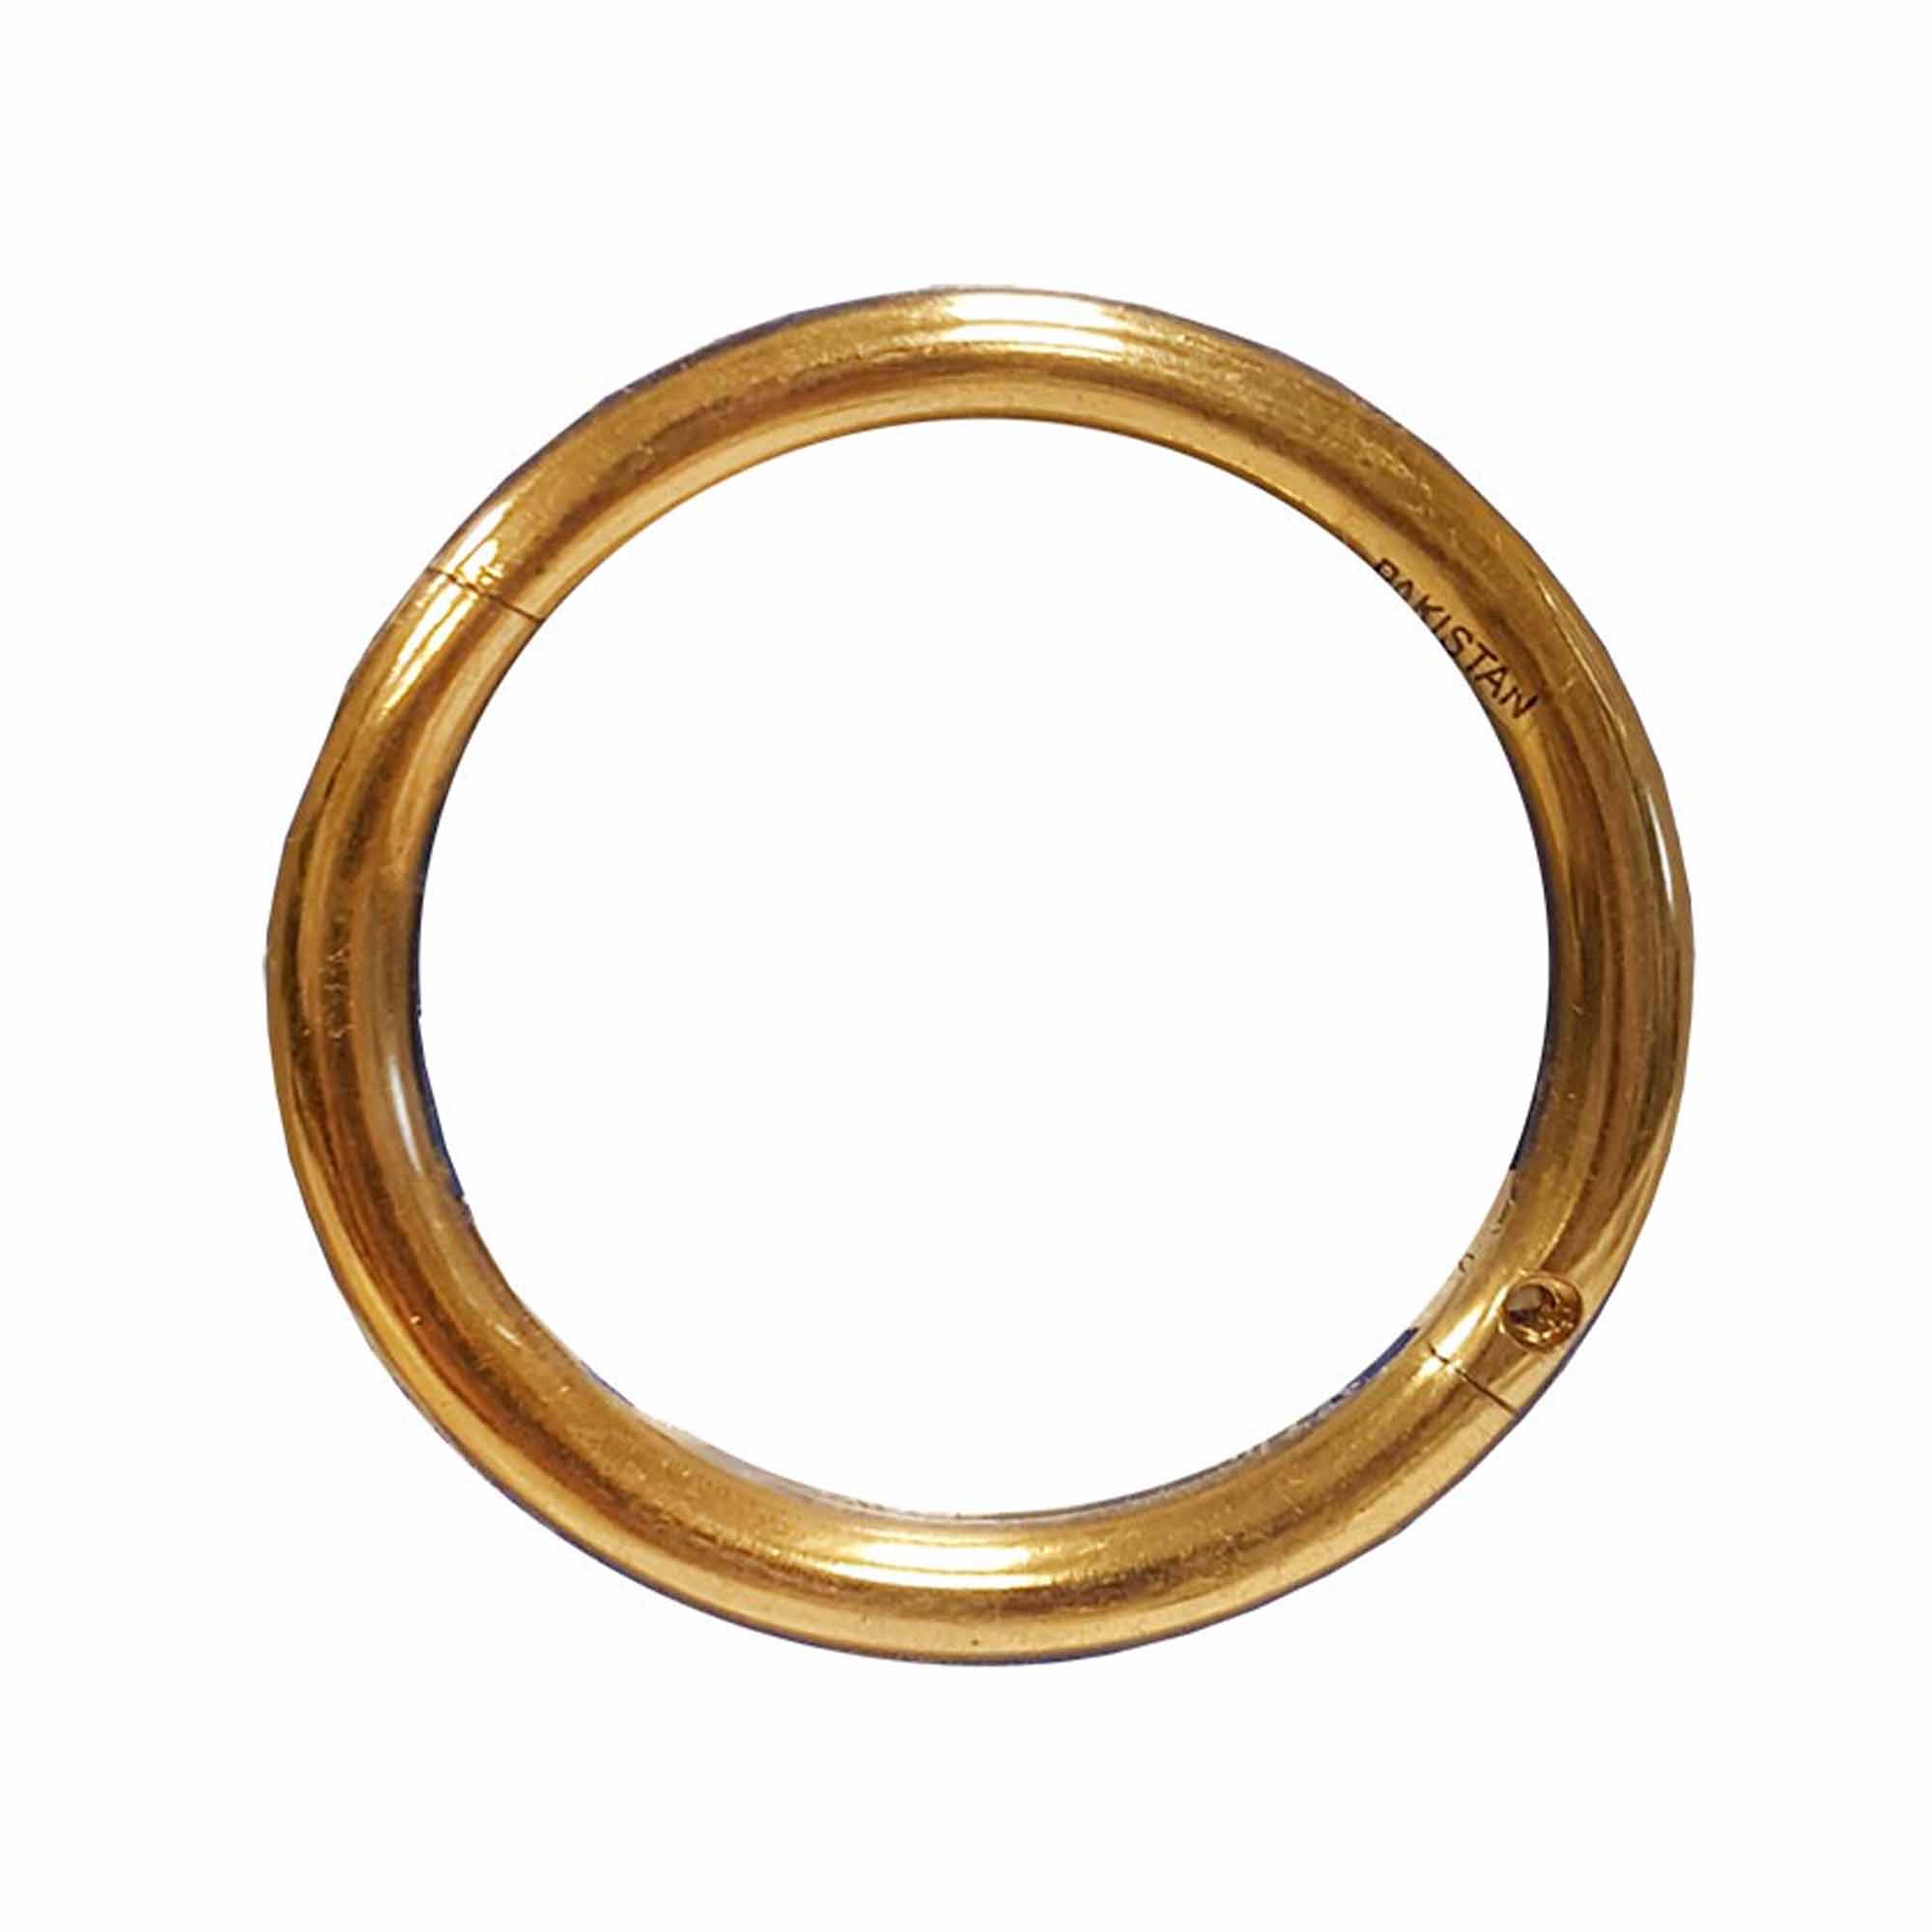 Agri-Pro-Enterprises - Brass Bull Ring